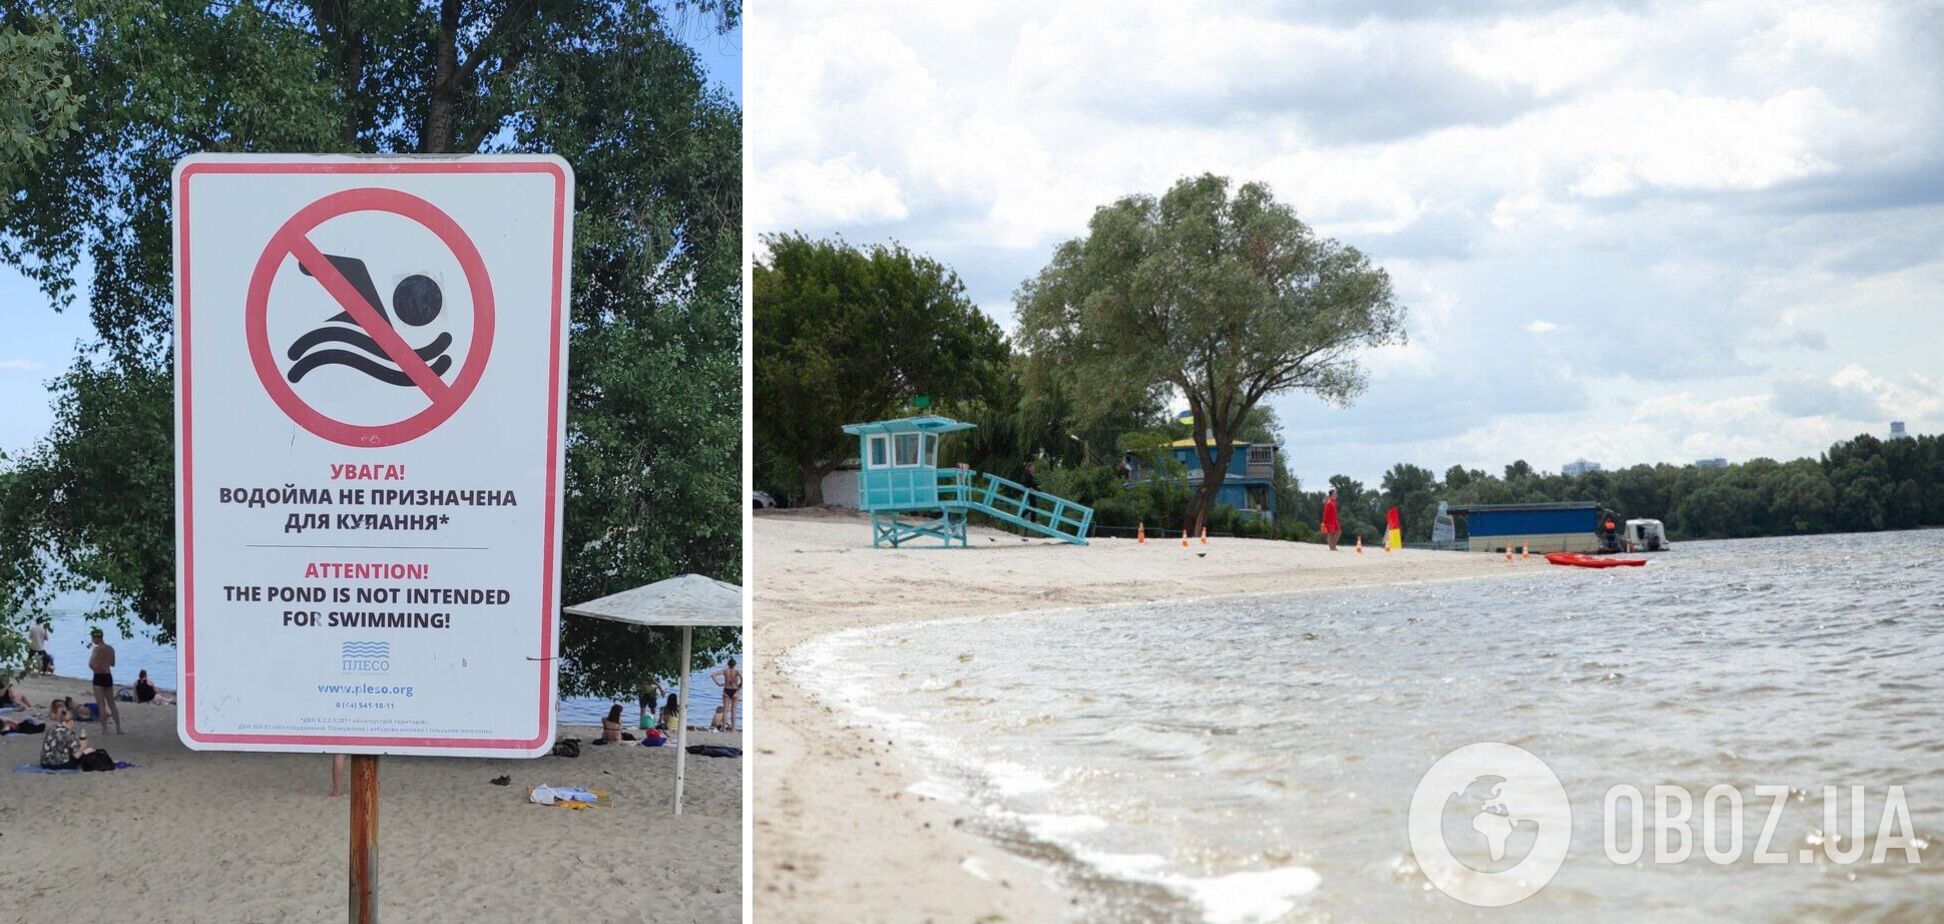 Специалисты продолжают мониторить состояние воды на пляжах столицы